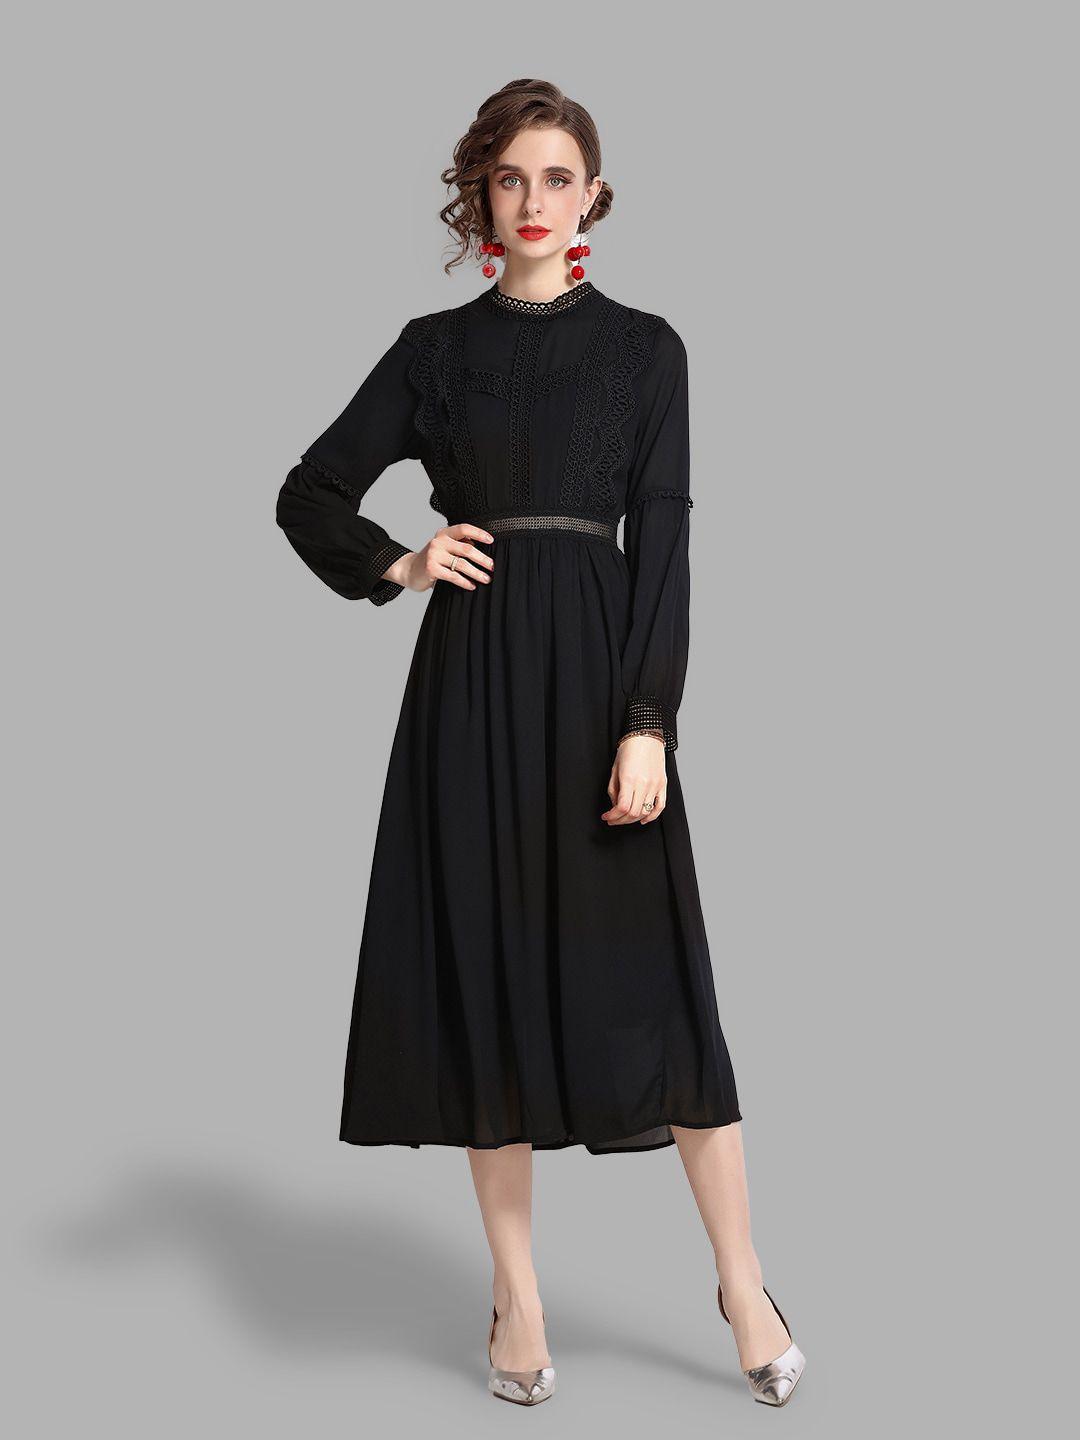 jc collection women black midi dress